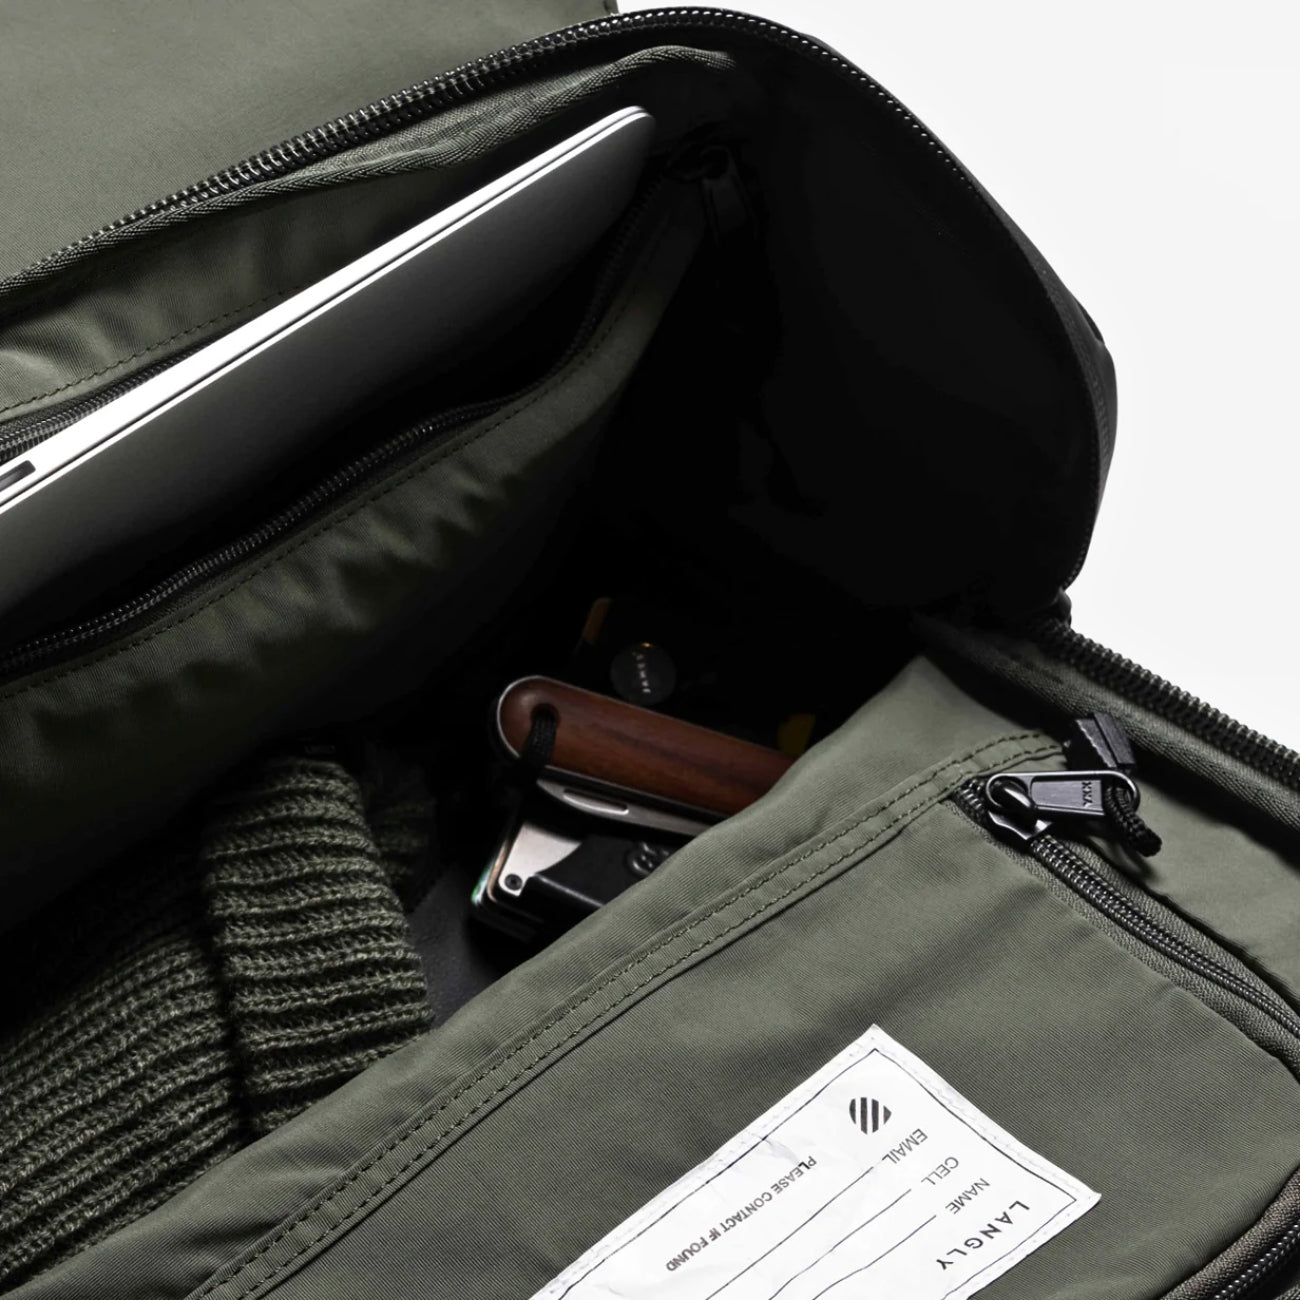 Langly Alpha Globetrotter Camera Backpack (Forest Green) - best photo backpack